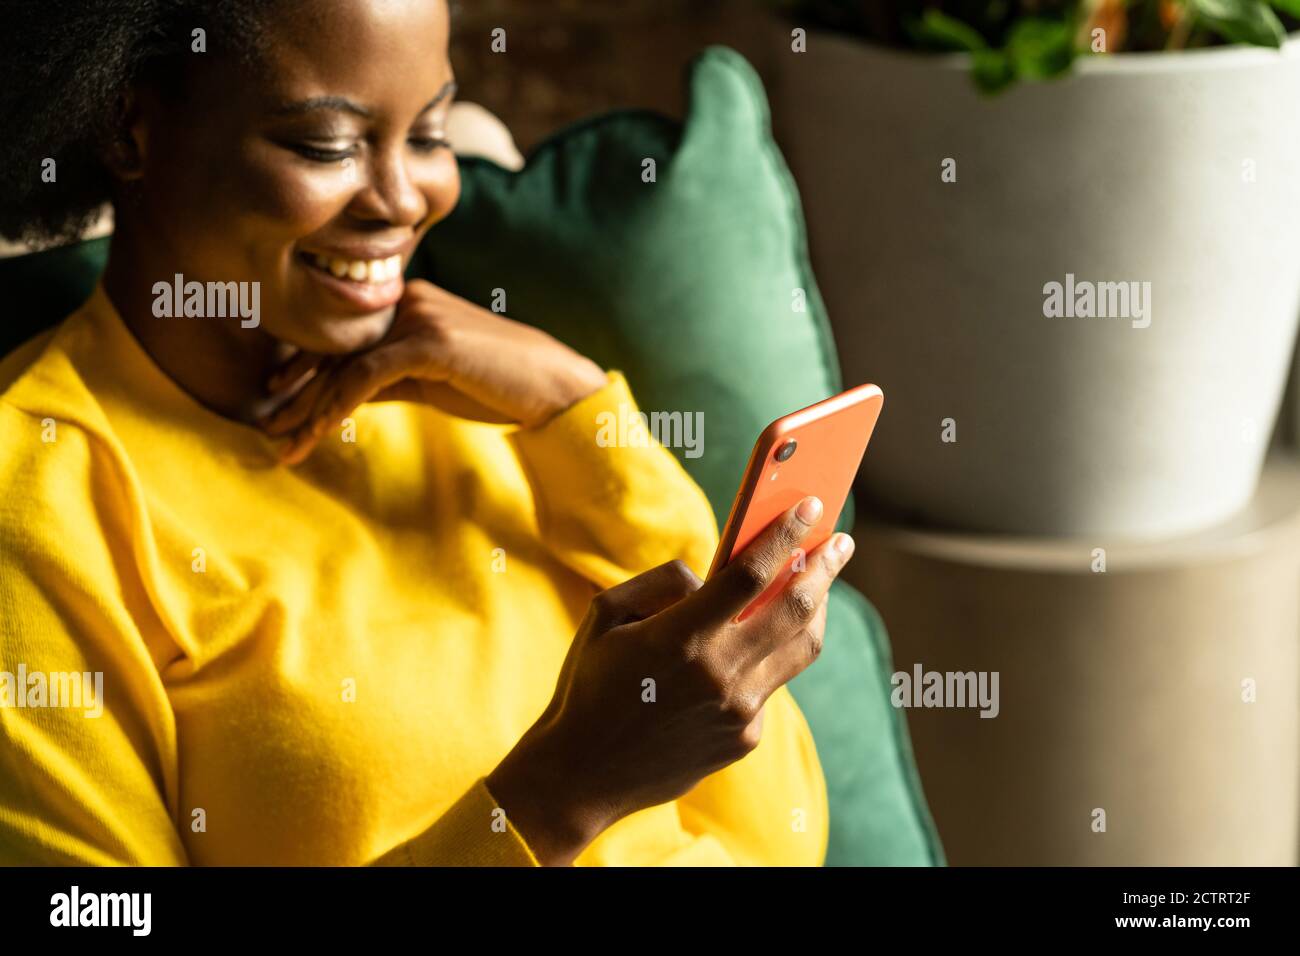 Gros plan de la jeune femme millénaire afro-américaine porter un chandail jaune assis dans une chaise verte, se reposer, utiliser un smartphone, taper un message, prendre une br Banque D'Images